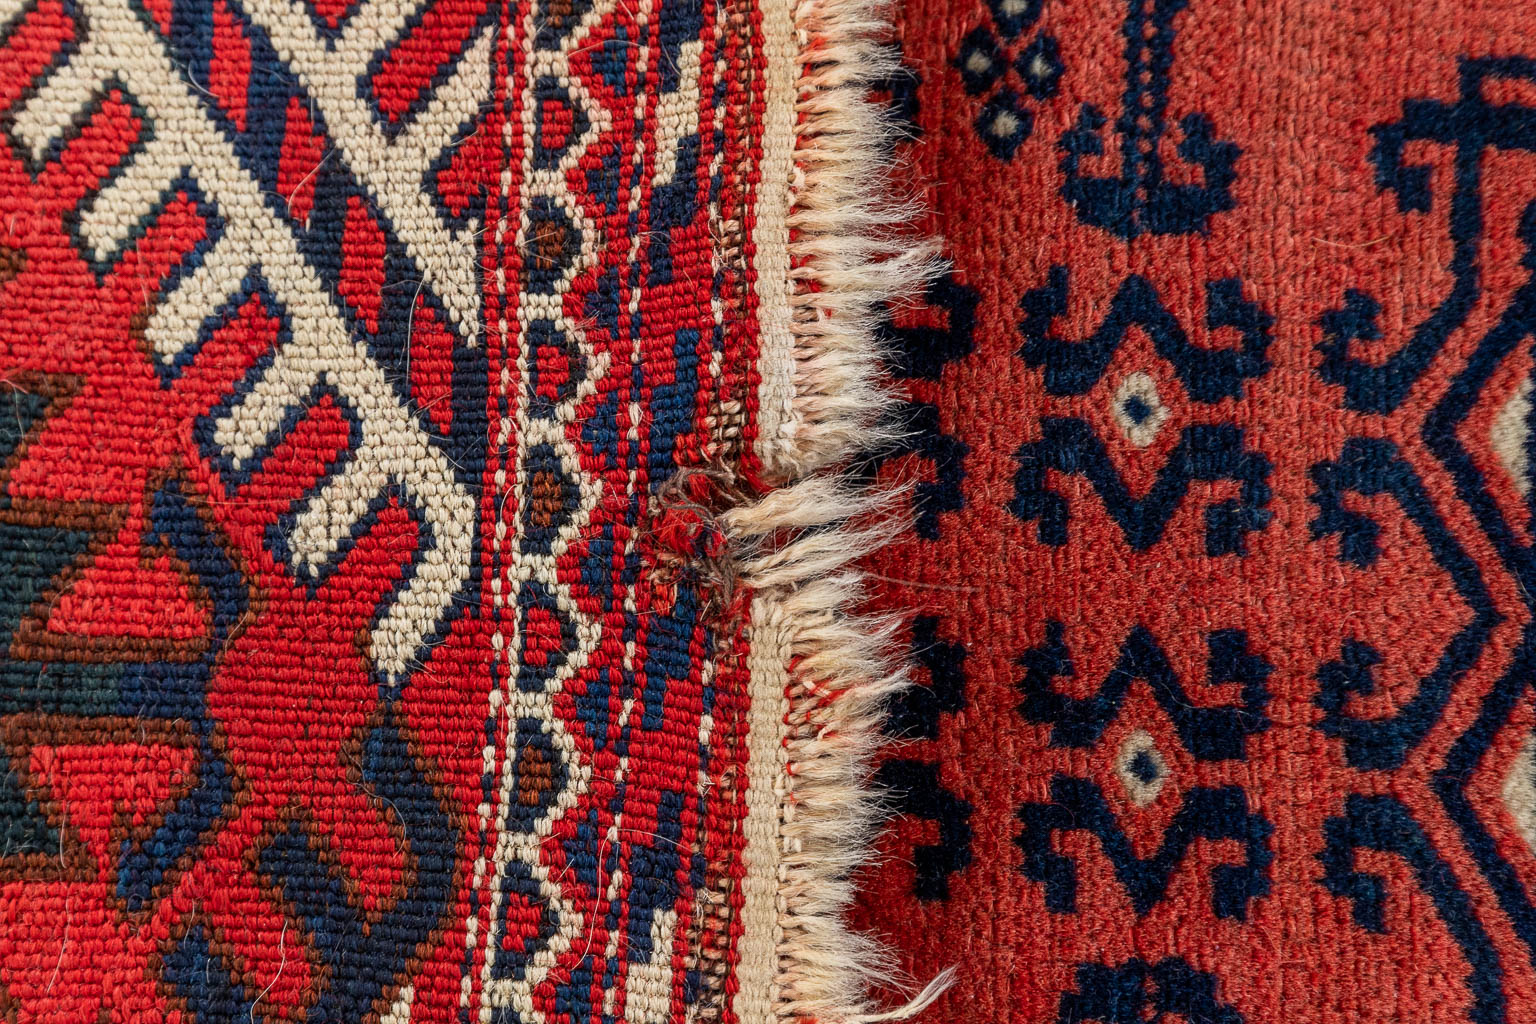 An Oriental hand-made carpet. (D:226 x W:119 cm)